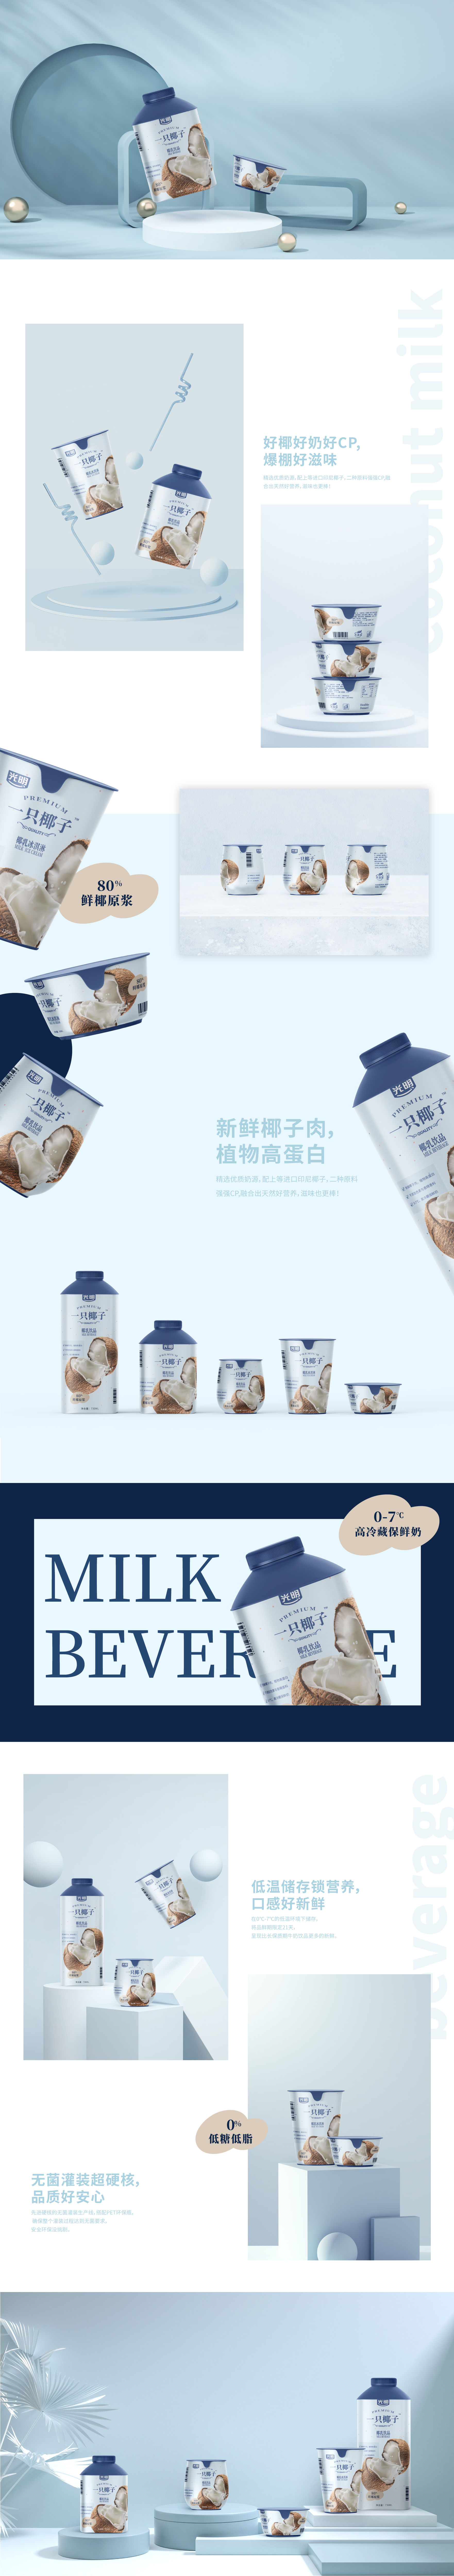 光明一只椰子-飲料包裝設計-杭州品牌策劃設計公司